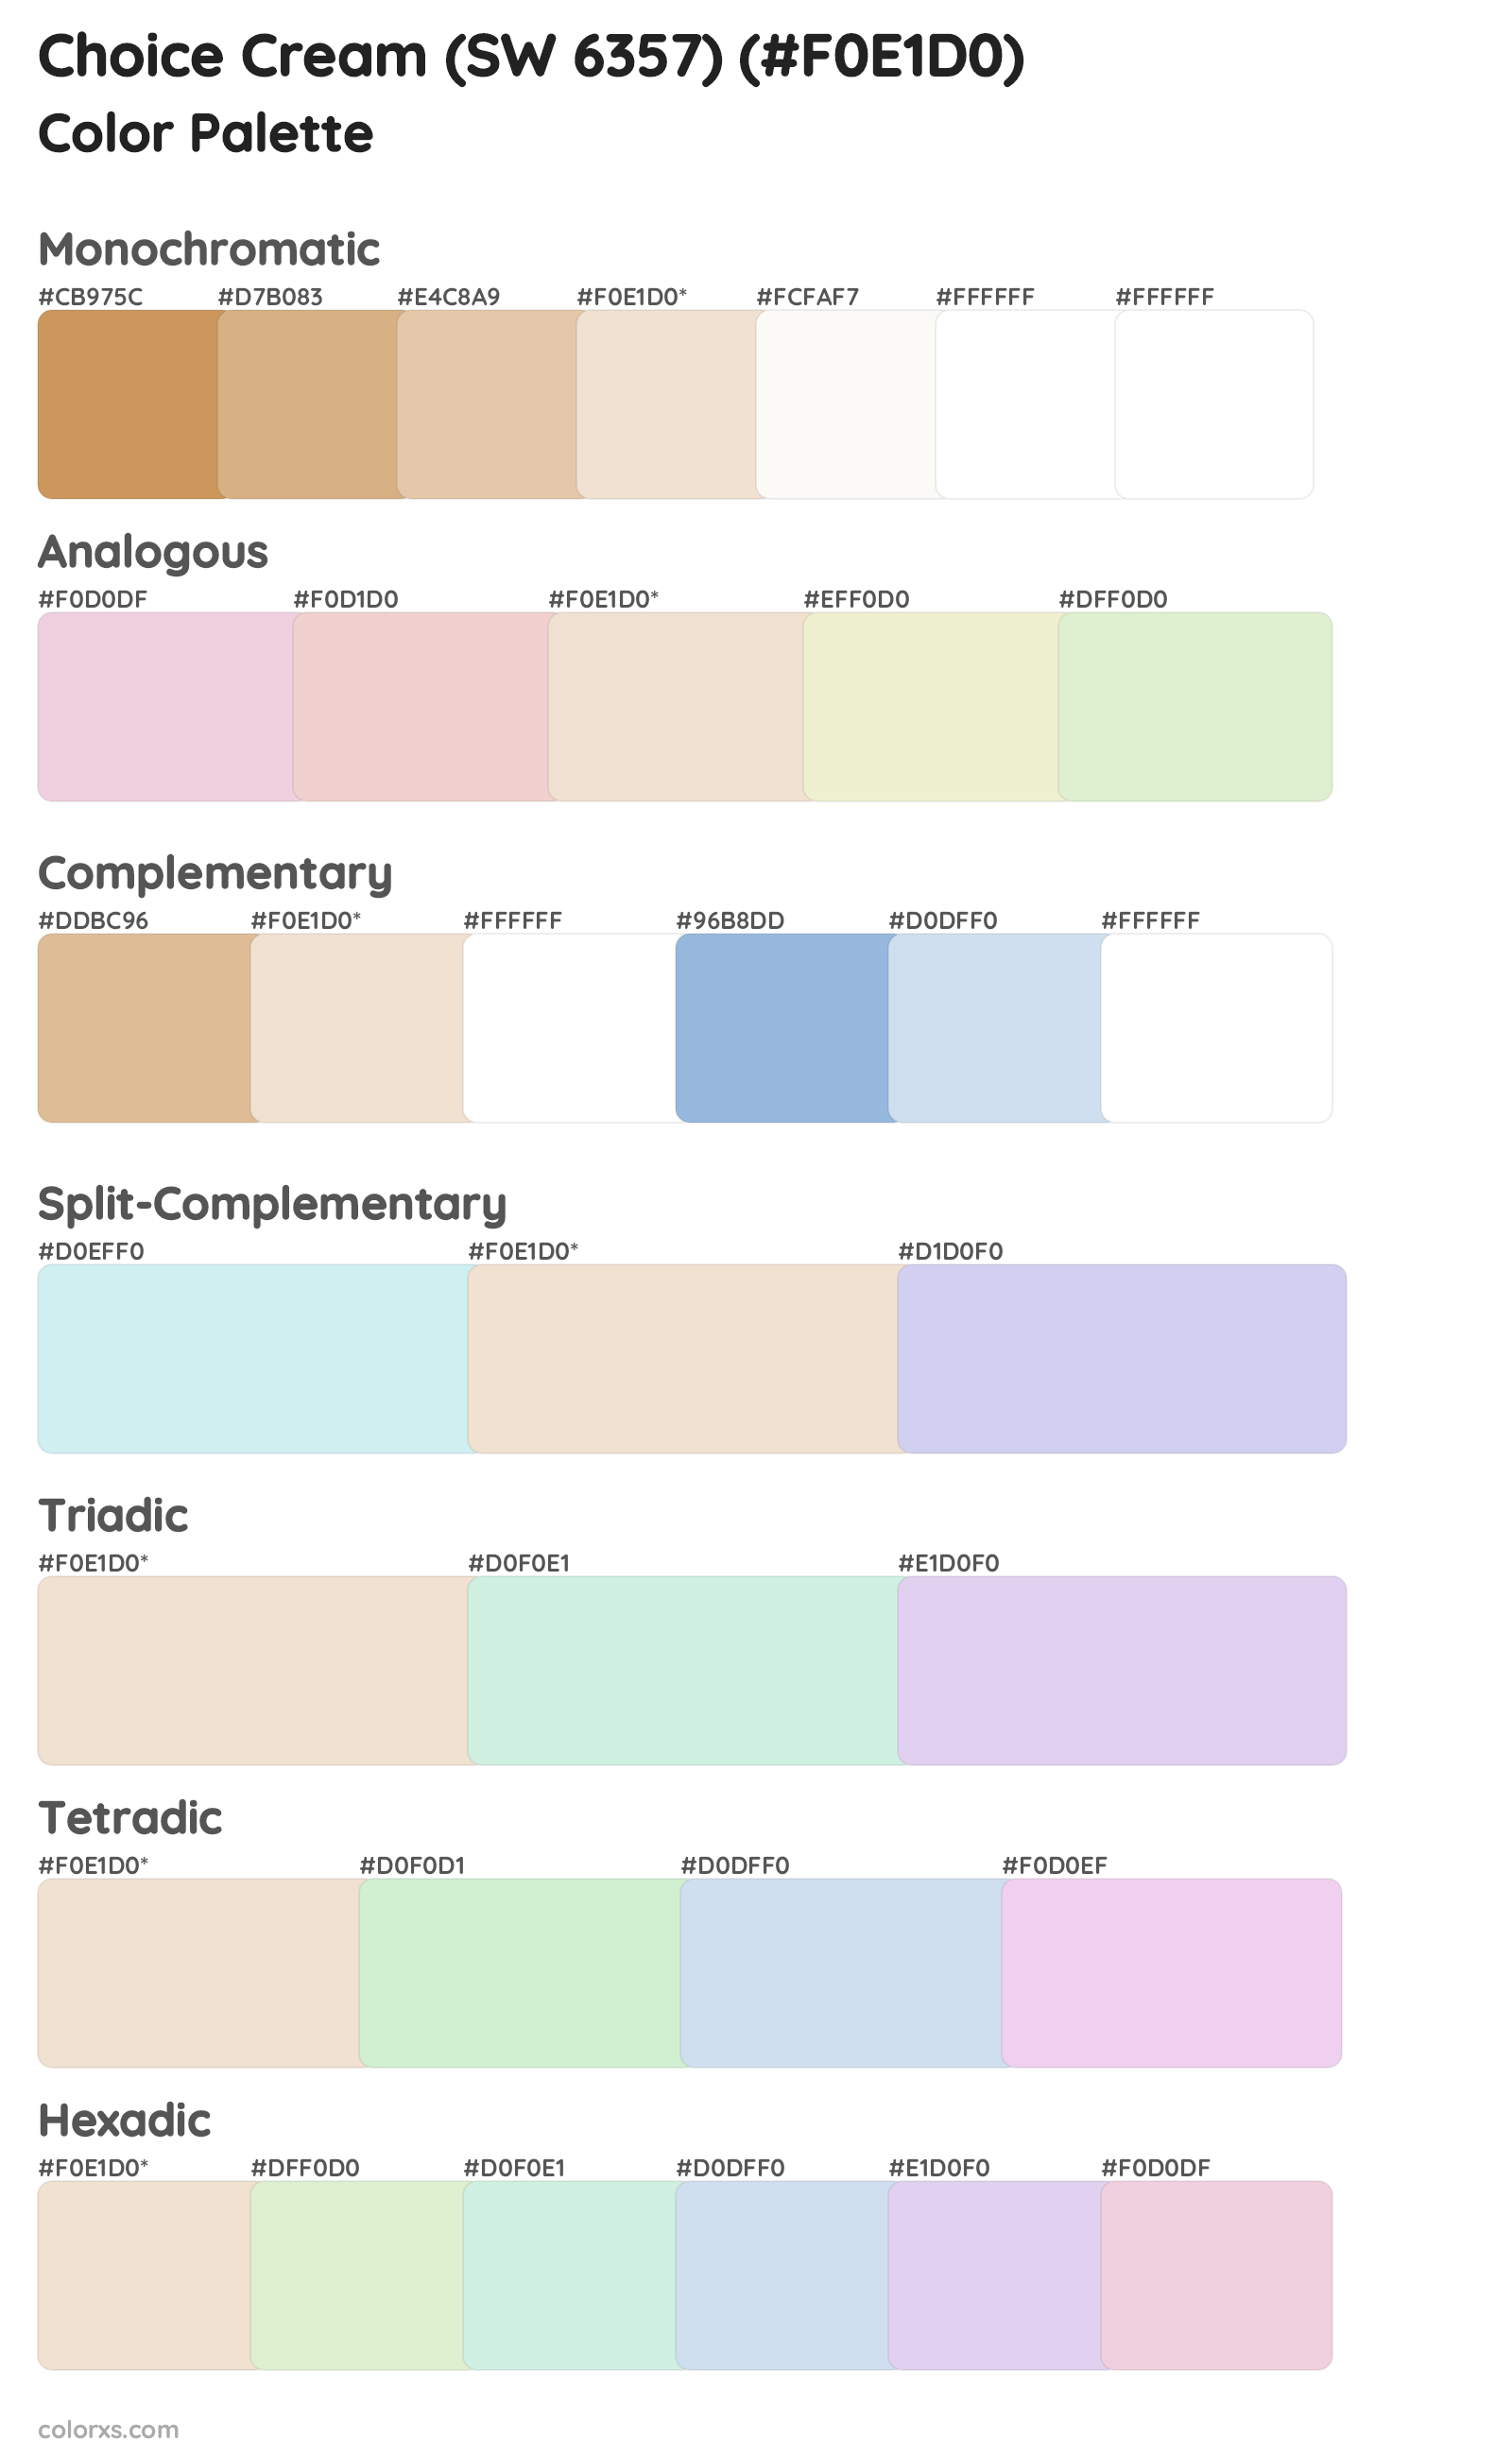 Choice Cream (SW 6357) Color Scheme Palettes